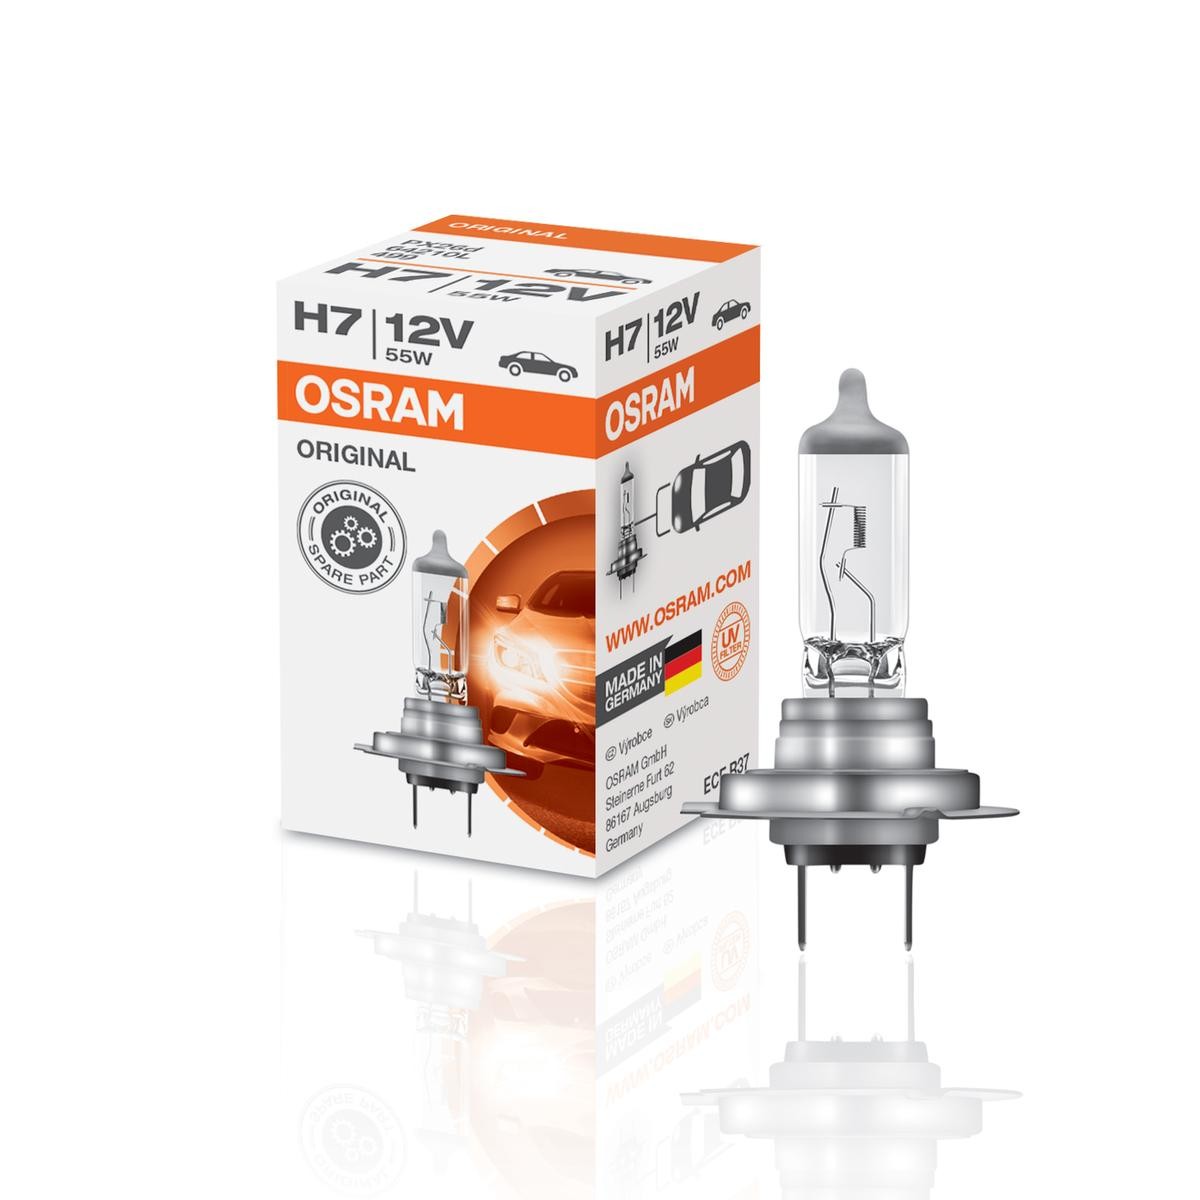 64210 OSRAM ORIGINAL LINE H7 12V 55W 3200K Halogène Ampoule, projecteur  longue portée